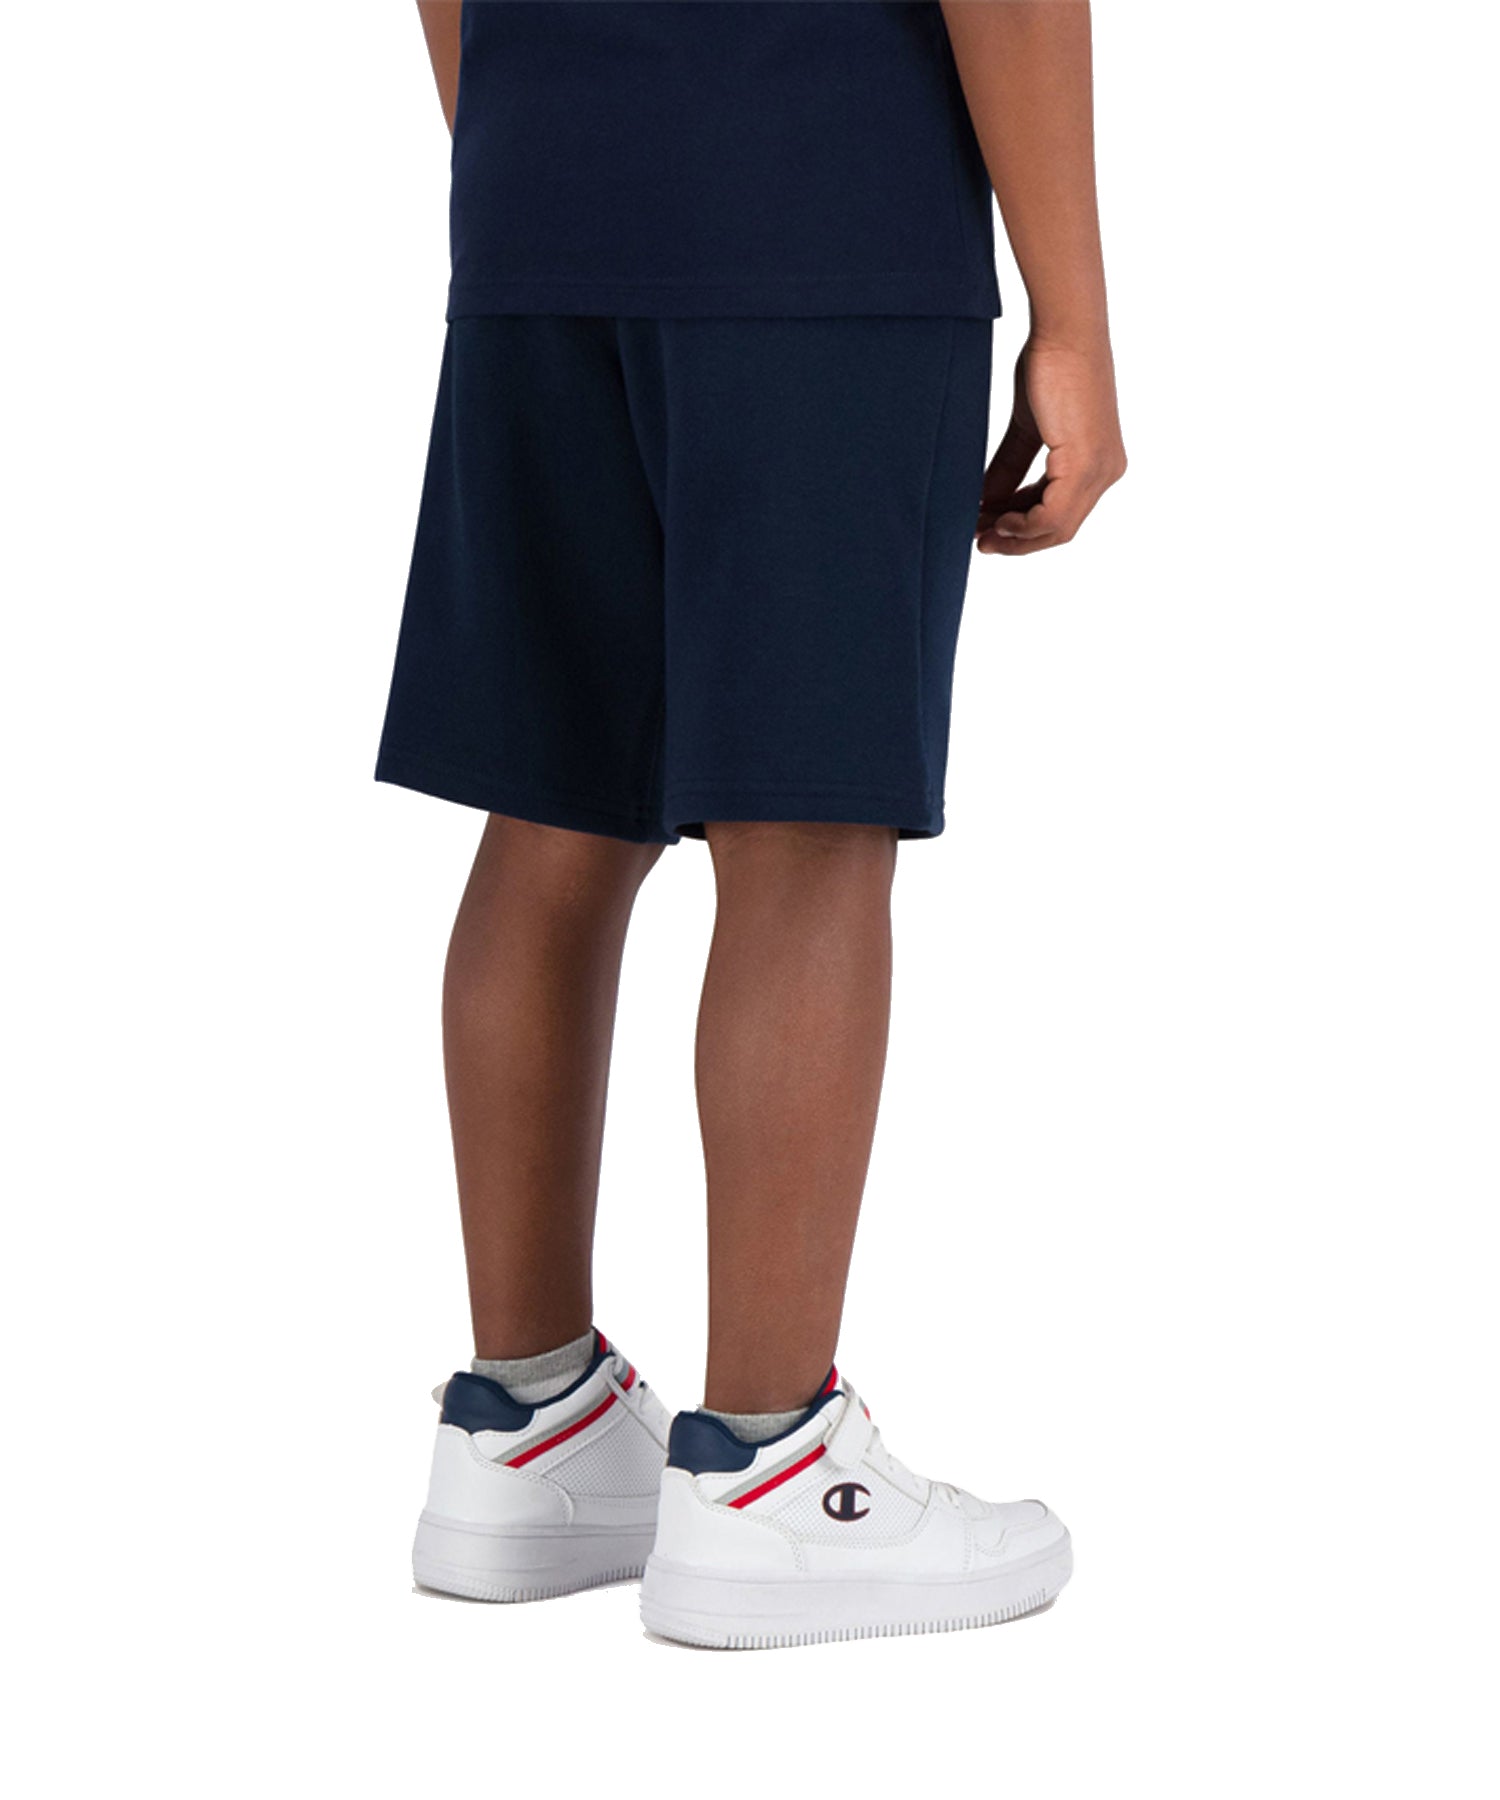 Champion pantalón corto para niño de color azul con la C de Champion en el lateral.dos bolsillos laterales-cintura elástica